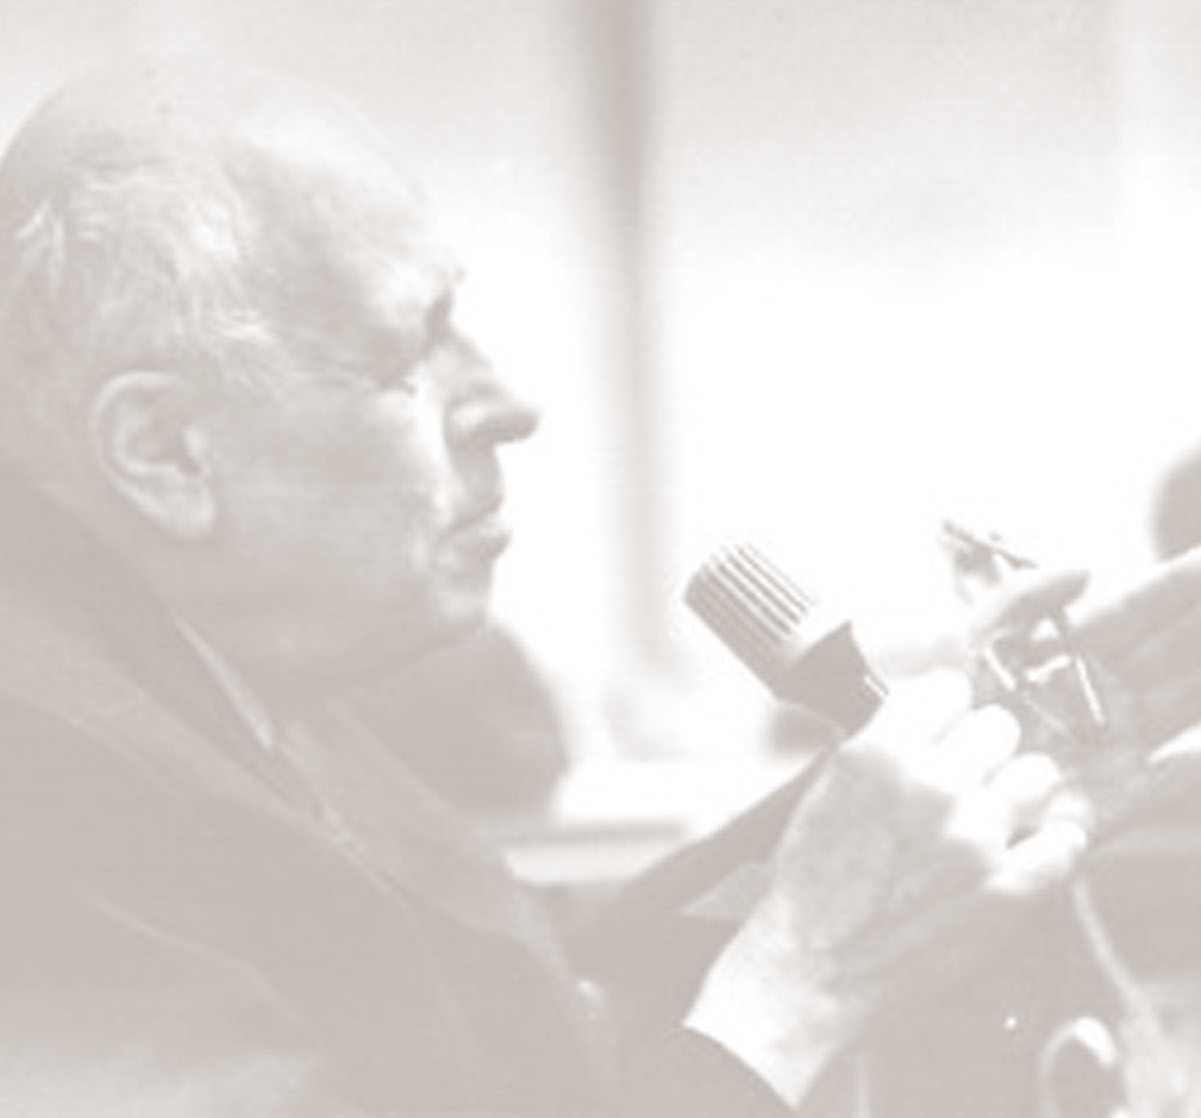 Αντρέι Ζαχάρωφ - Πηγή έμπνευσης του Βραβείου Αντρέι Ζαχάρωφ - Πηγή έμπνευσης του Βραβείου Από το 1988, το Ευρωπαϊκό Κοινοβούλιο απονέμει ετησίως το «Βραβείο Ζαχάρωφ για την Ελευθερία της Σκέψης» σε